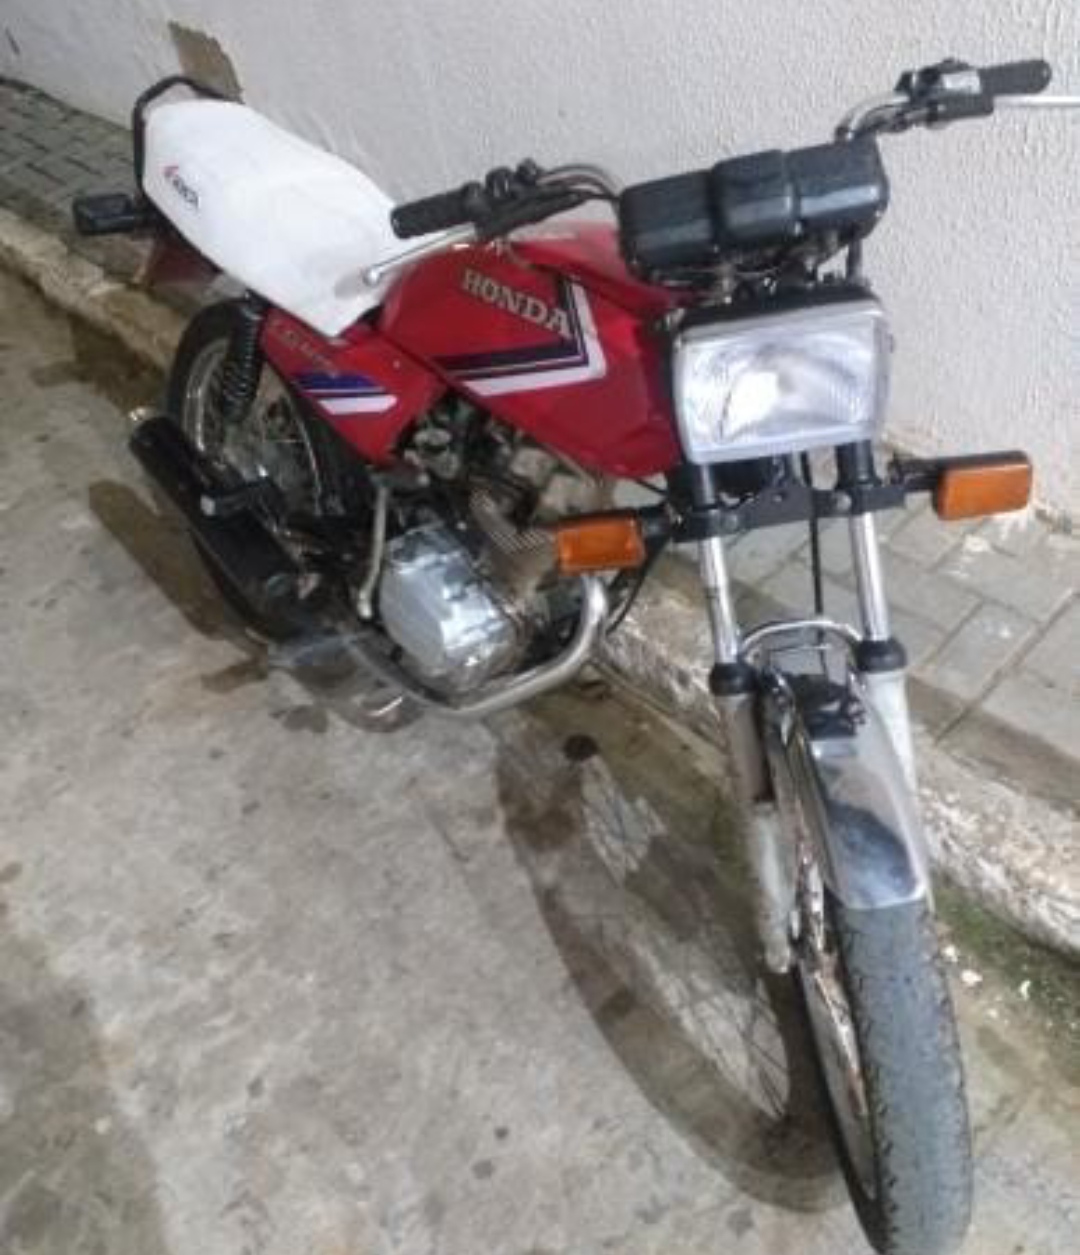 IMG_20220709_190424 Motocicleta é furtada em frente a estabelecimento comercial no centro de Monteiro